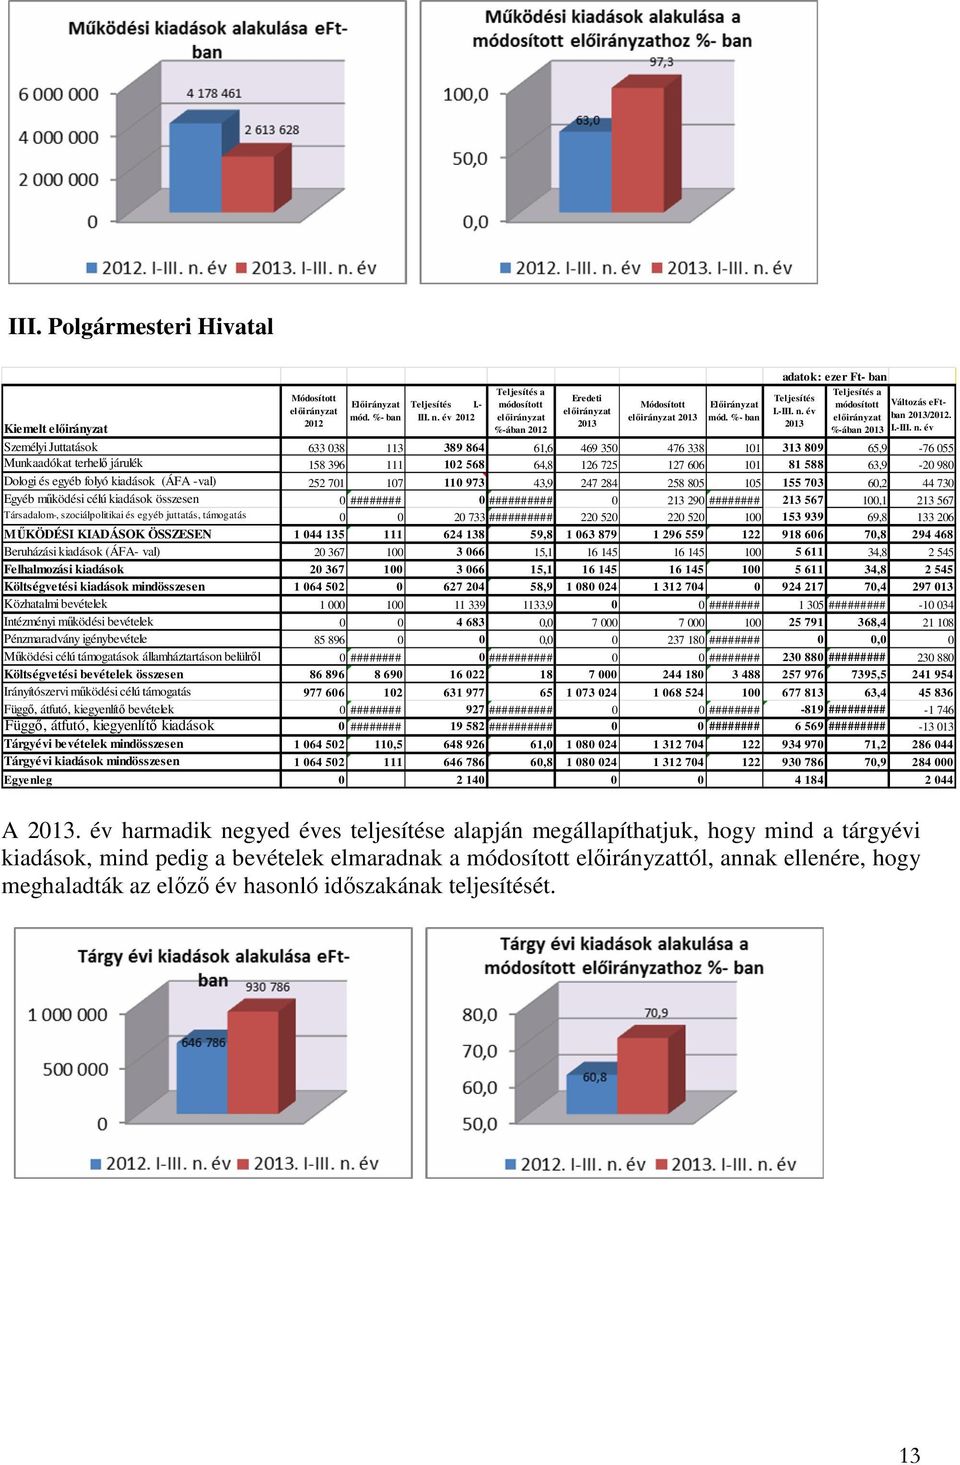 év 2013 Teljesítés a módosított Változás eftelıirányzat ban 2013/2012. %-ában 2013 I.-III. n.